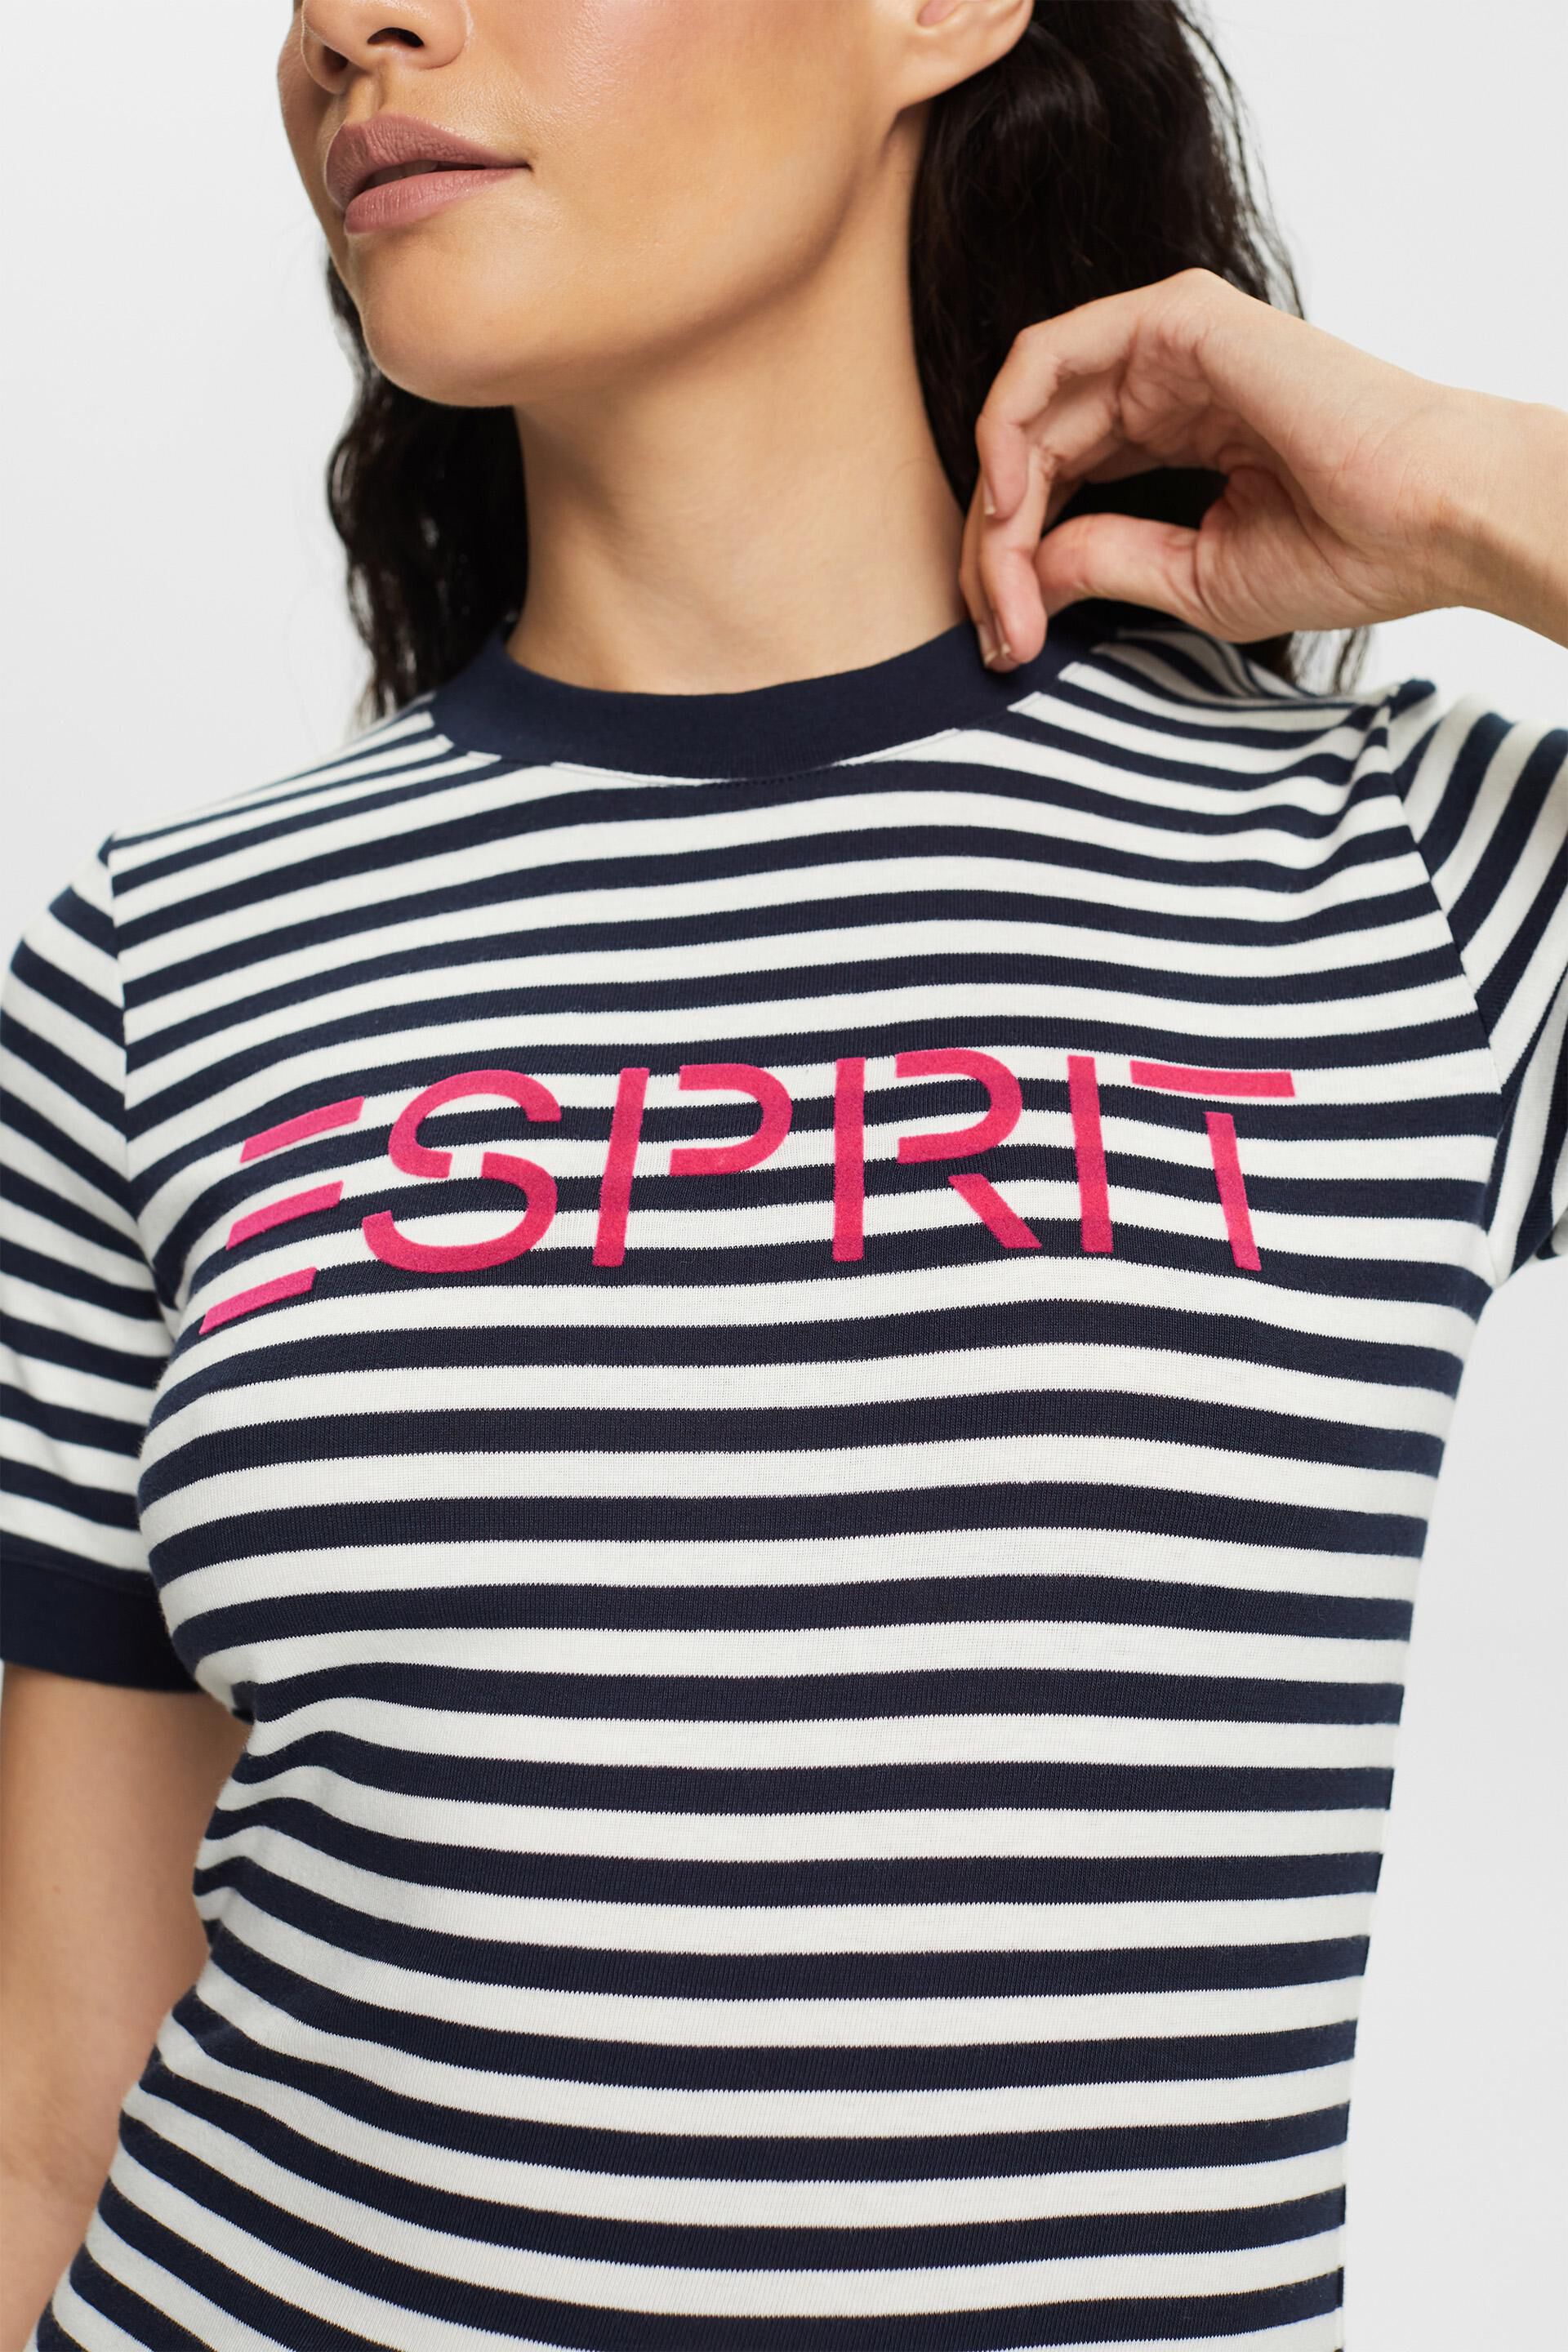 Esprit mit Gestreiftes Logo-Print Baumwoll-T-Shirt